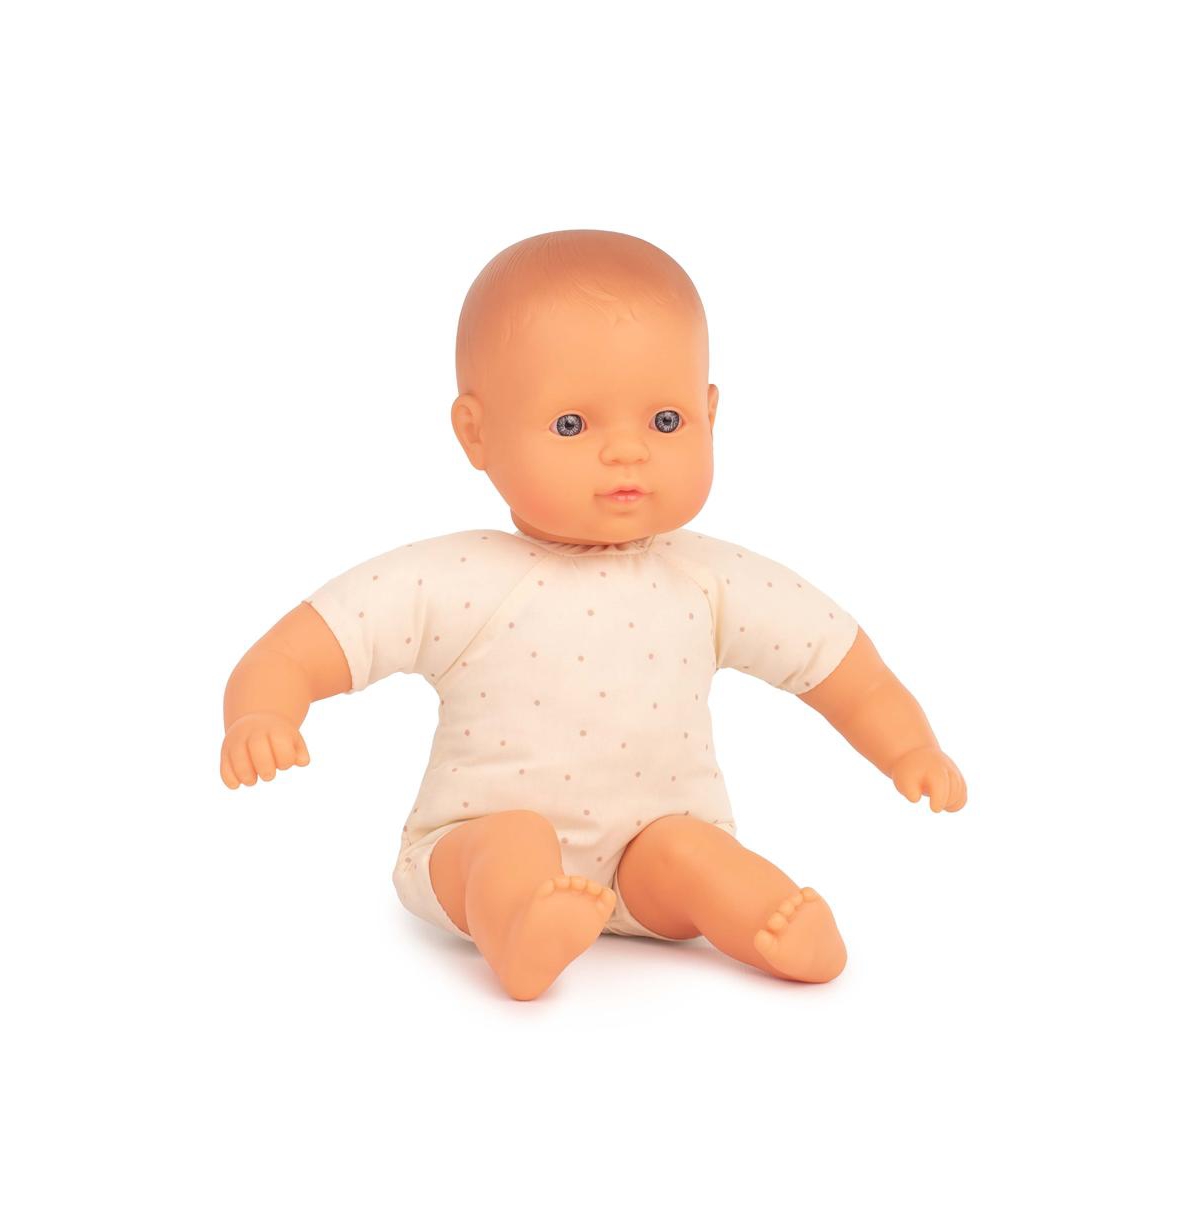 Miniland Caucasian 12.62" Soft Body Doll In Multicolor